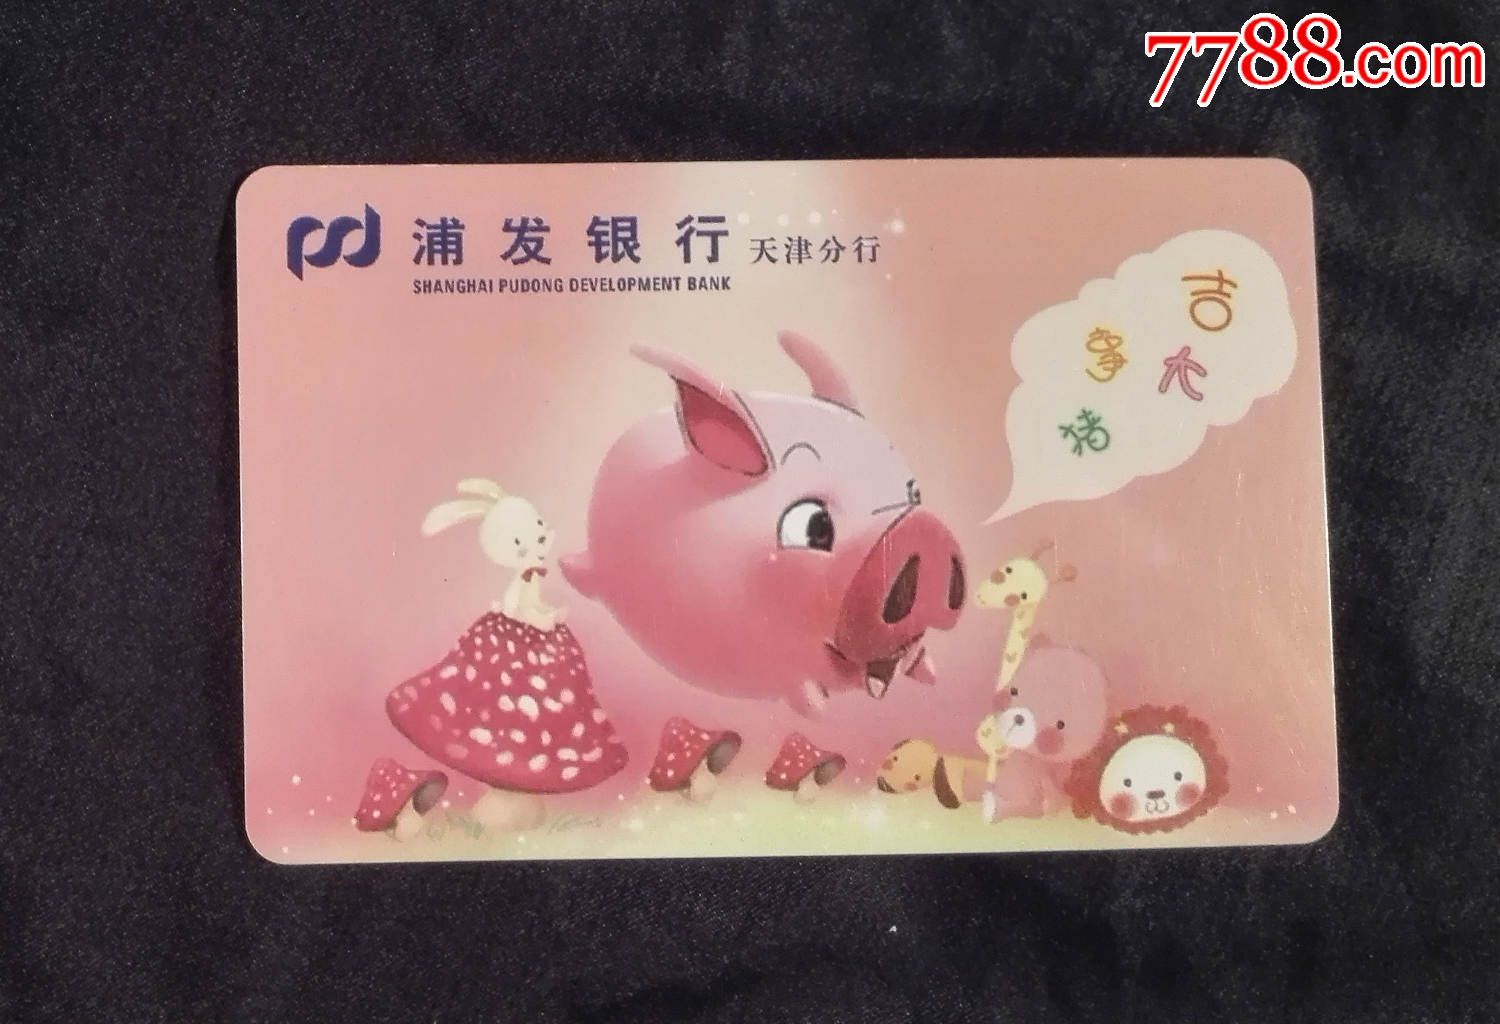 浦发银行天津分行(上海浦东发展银行)2007年年历片(猪年)